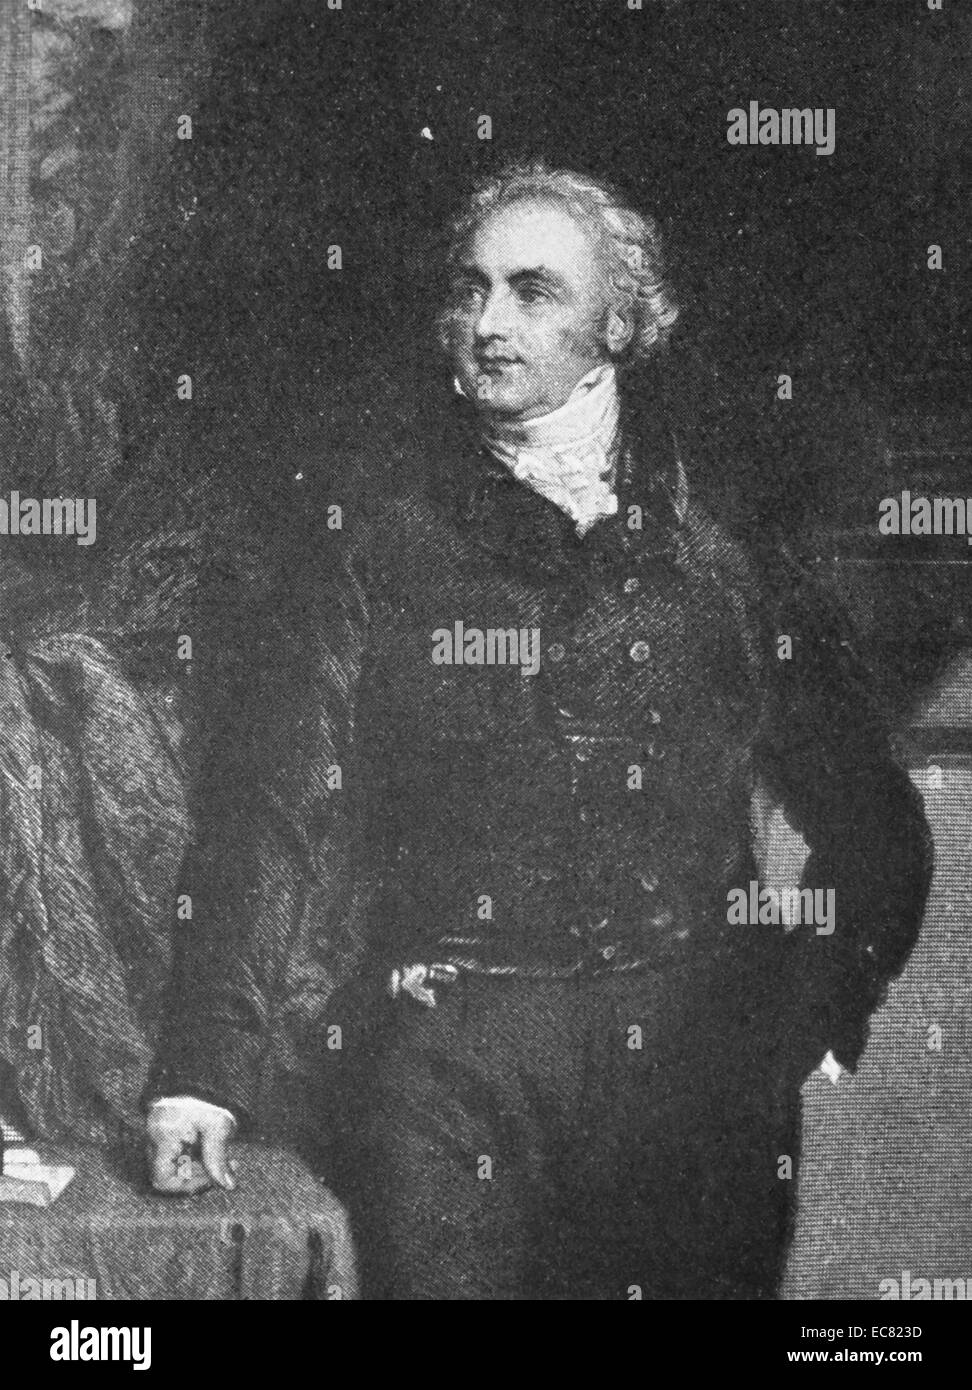 Sir Astley Paston Cooper, 1st Baronet (23. August 1768 - 12. Februar 1841) war ein englischer Arzt und Anatom. Am besten für seine Beiträge Chirurgie und Anatomie der Pathologie der Brustdrüsen ans Hoden auf vaskuläre bekannt. Stockfoto